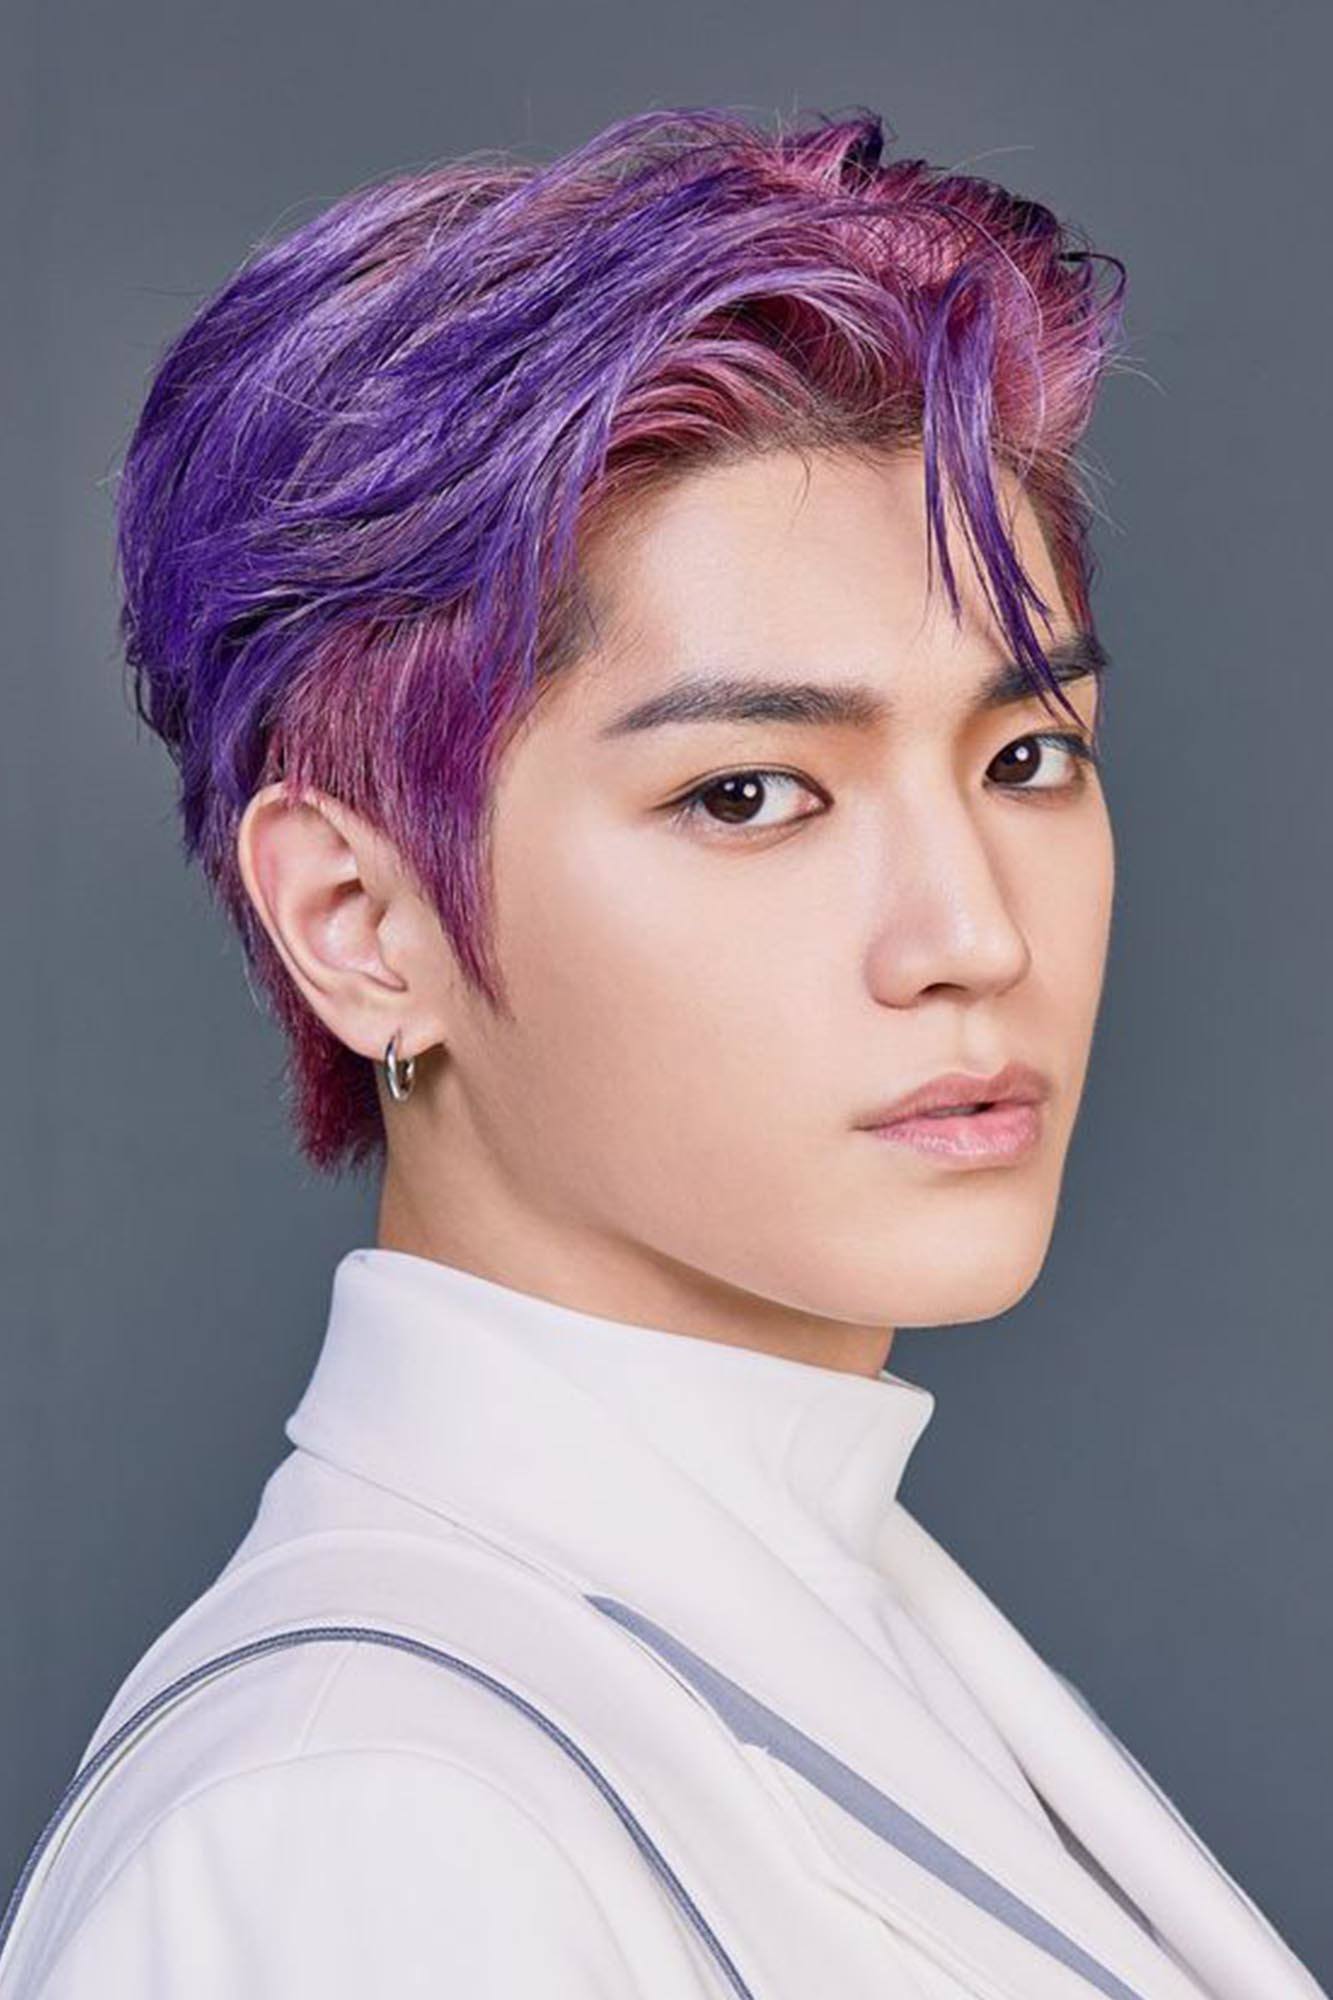 taeyong nct superm dari korea dengan rambut warna ungu